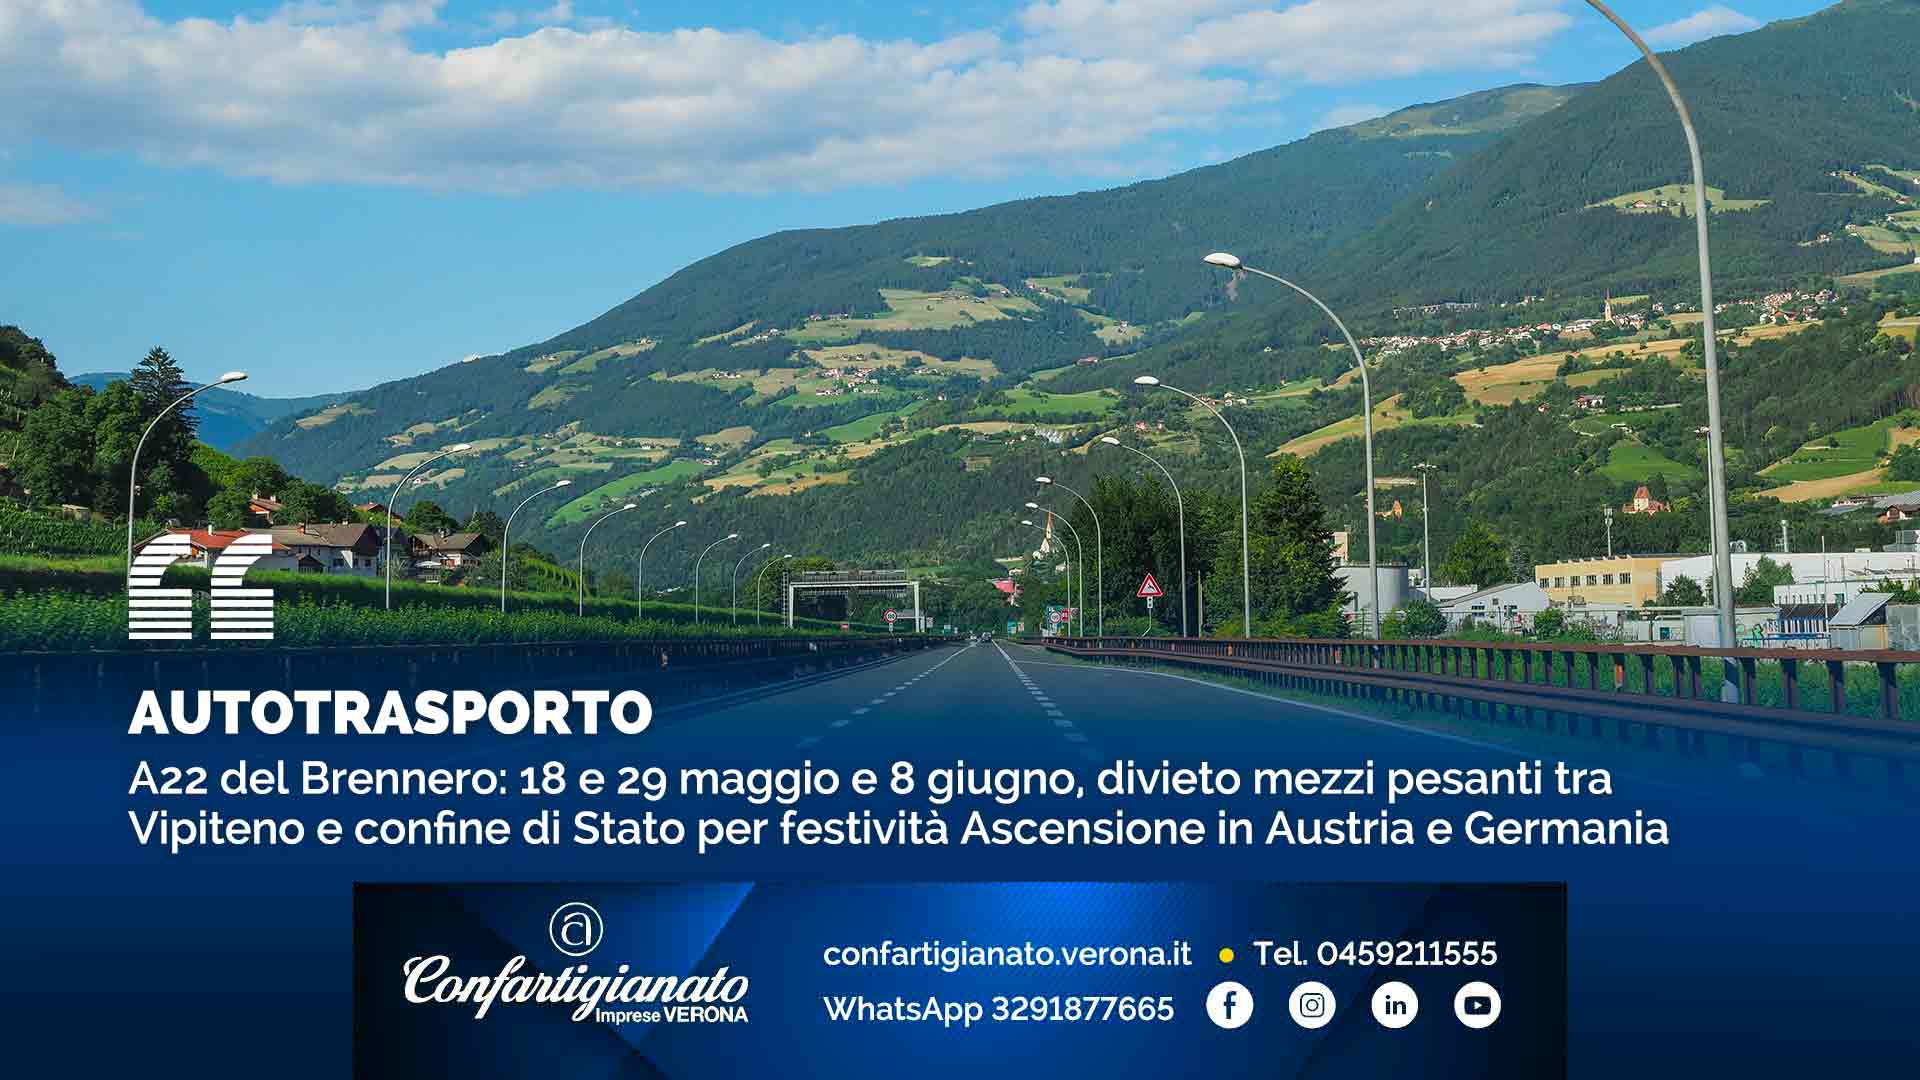 AUTOTRASPORTO – A22 Brennero: 18 e 29 maggio e 8 giugno, divieto mezzi pesanti tra Vipiteno e confine di Stato per festività Ascensione in Austria e Germania